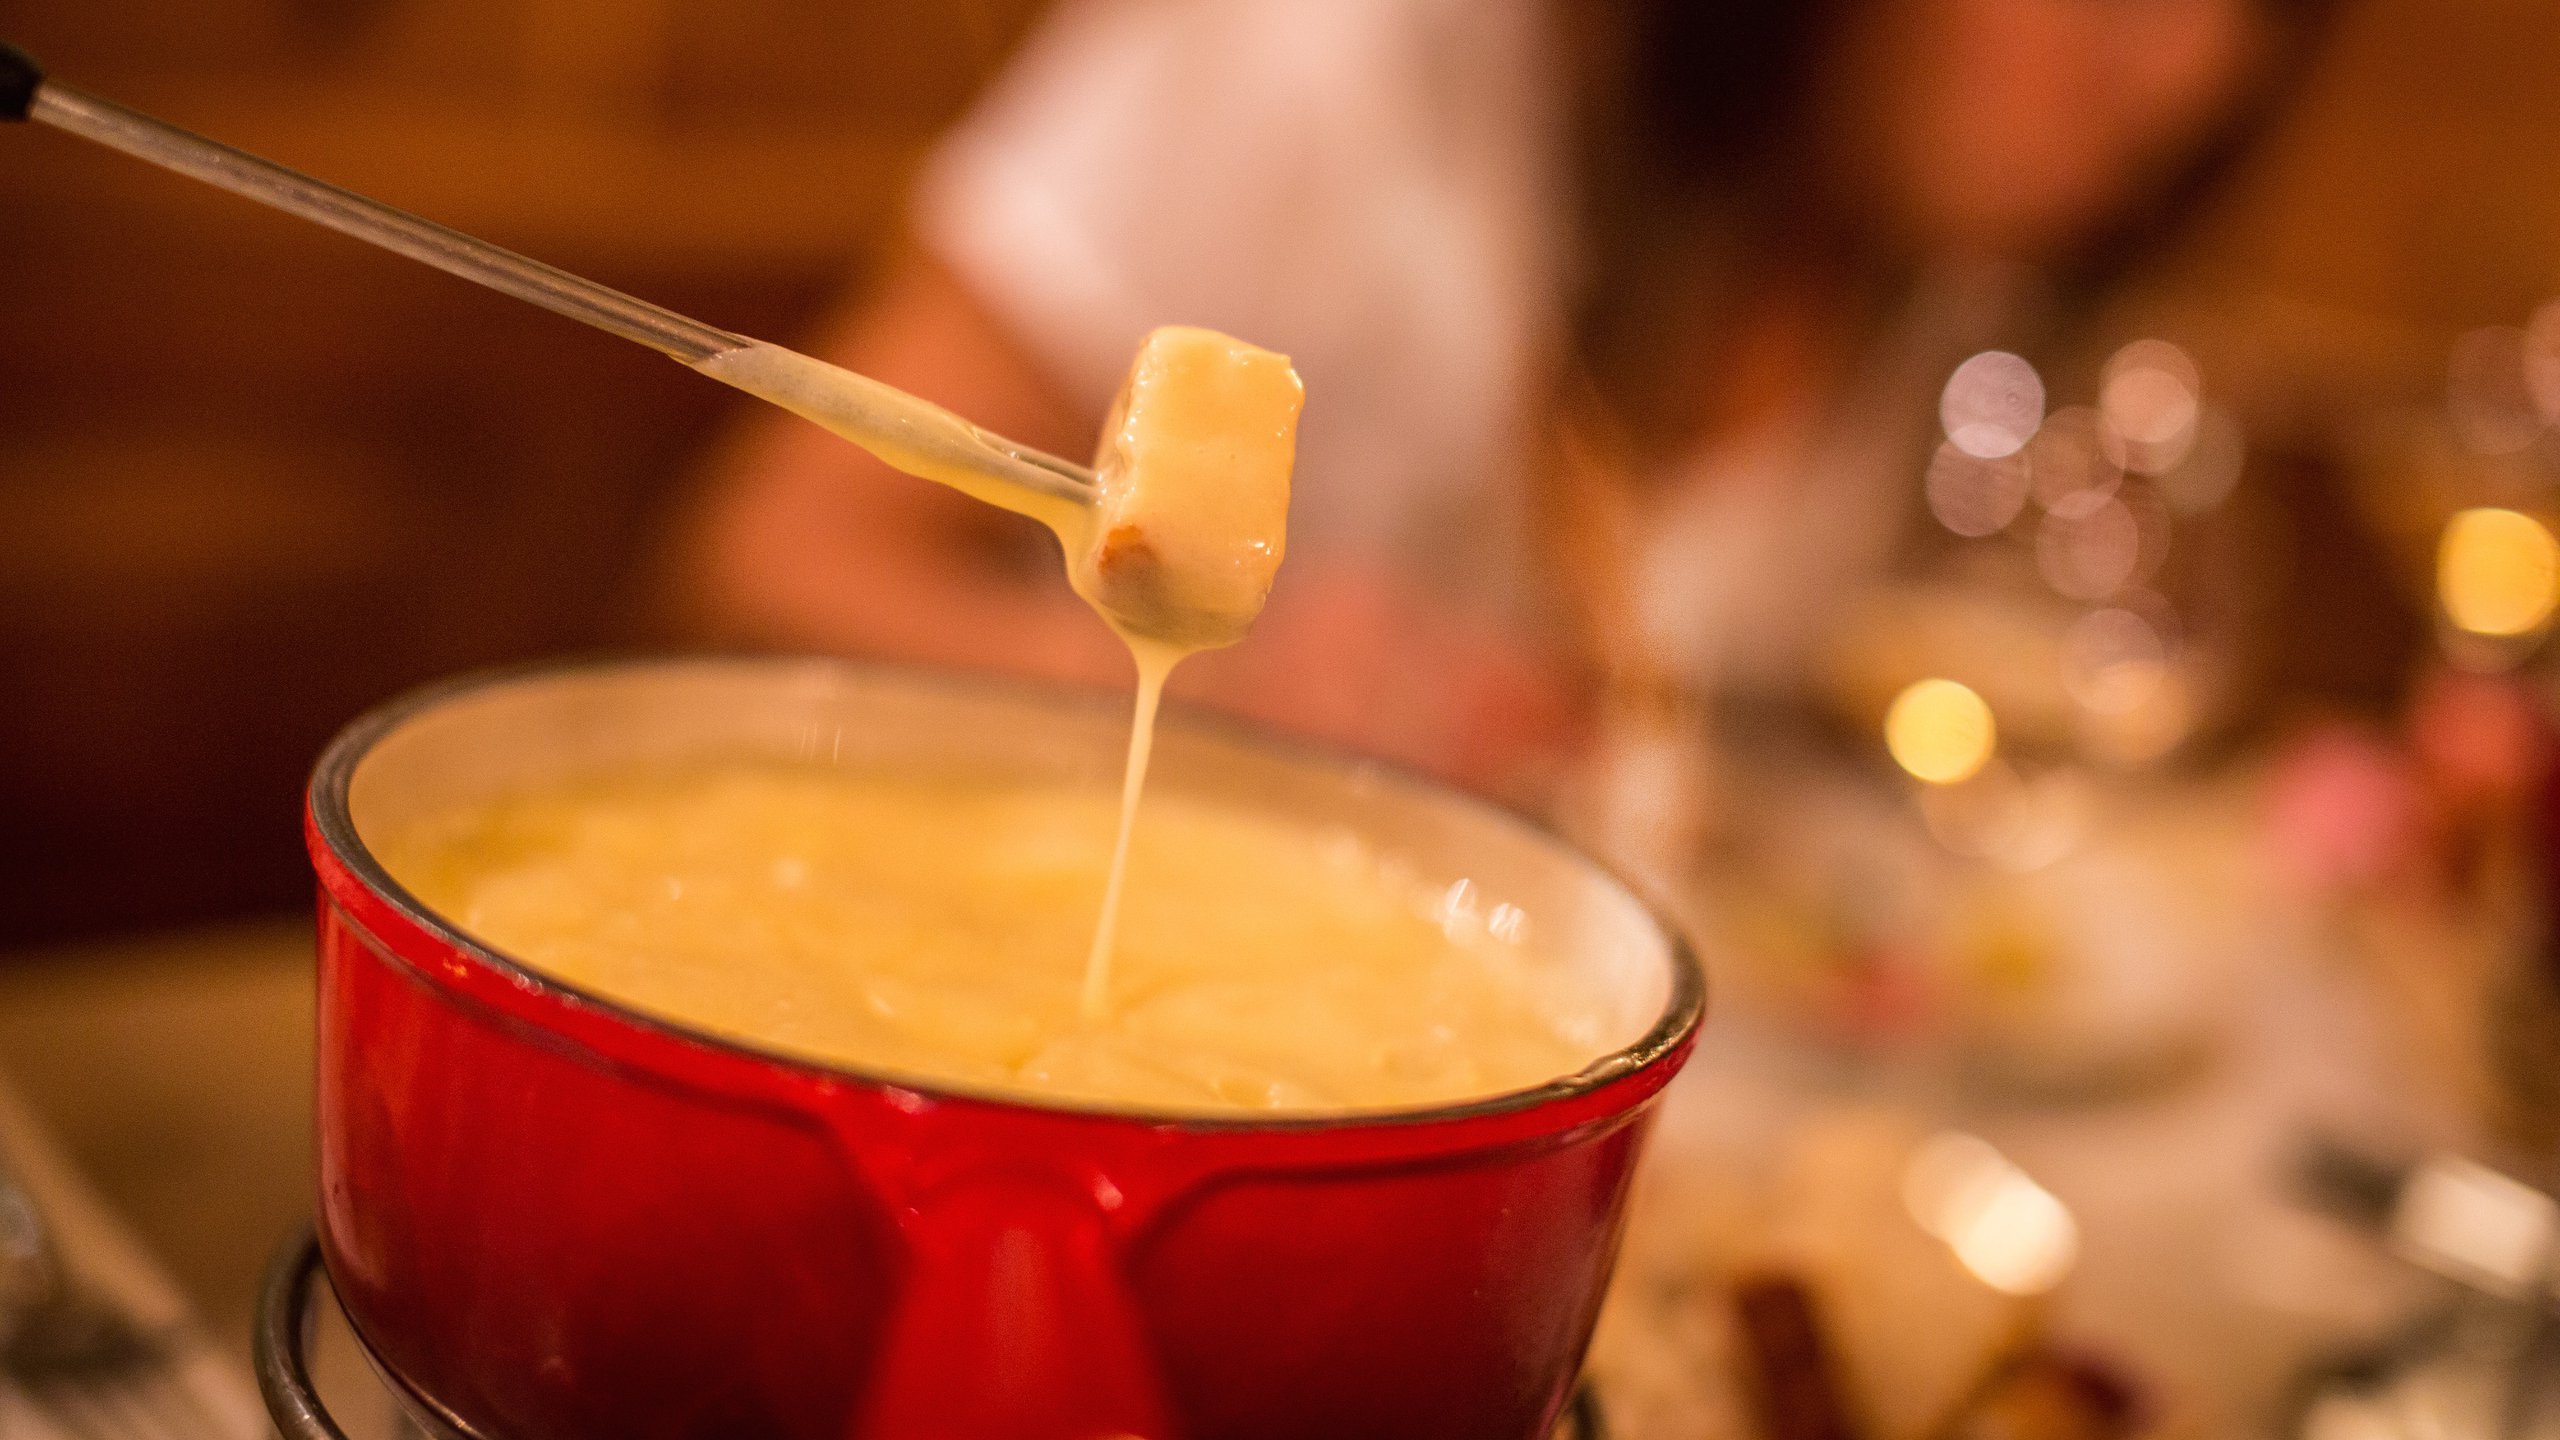 Swiss cheese fondue